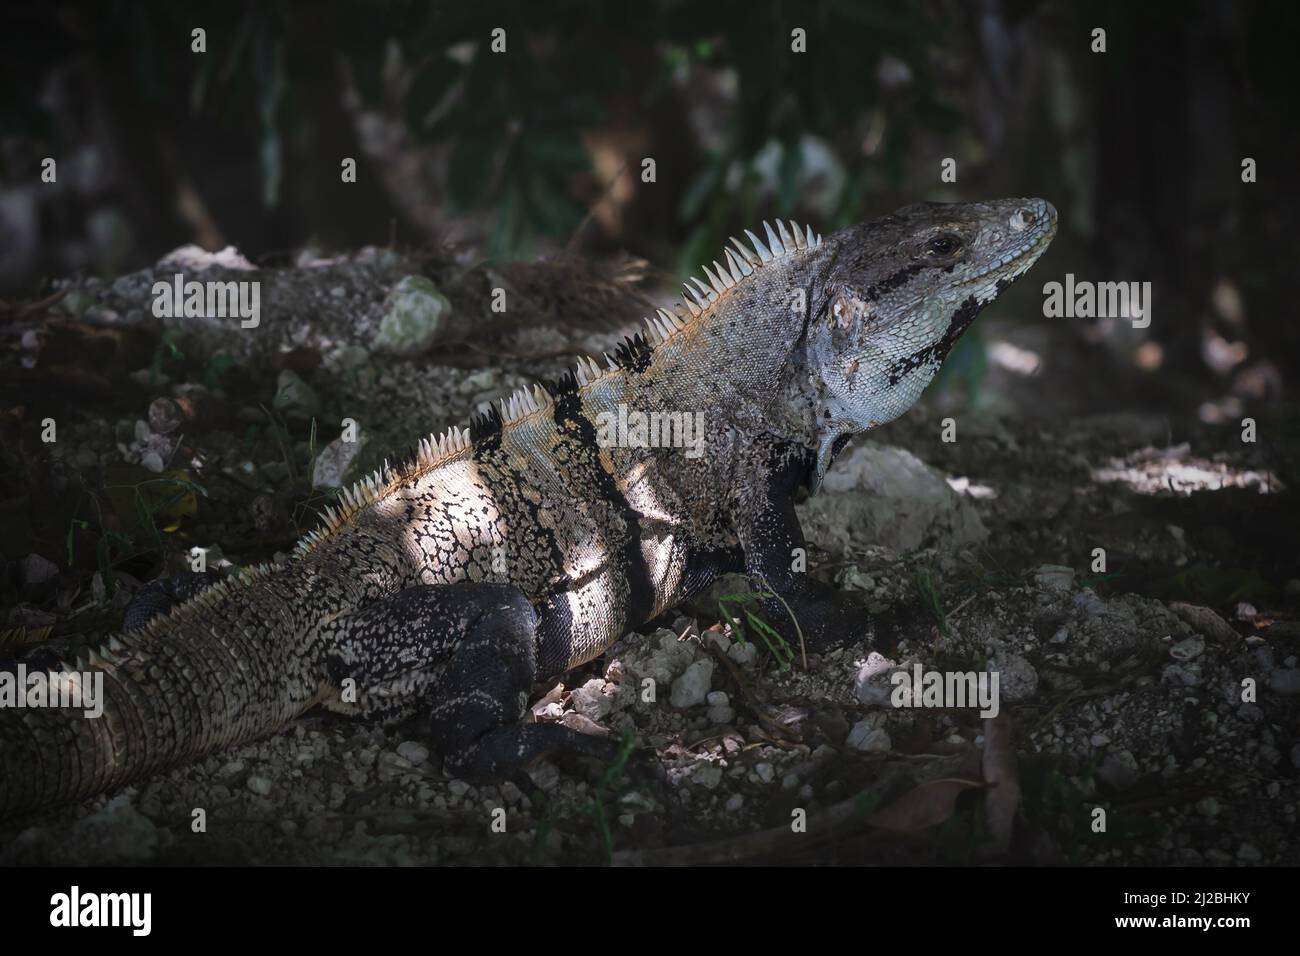 Close up of a posing Black spiny-tailed iguana, black iguana, latin name 'Ctenosaura Similis', on stones in tropical forest, Belize Stock Photo